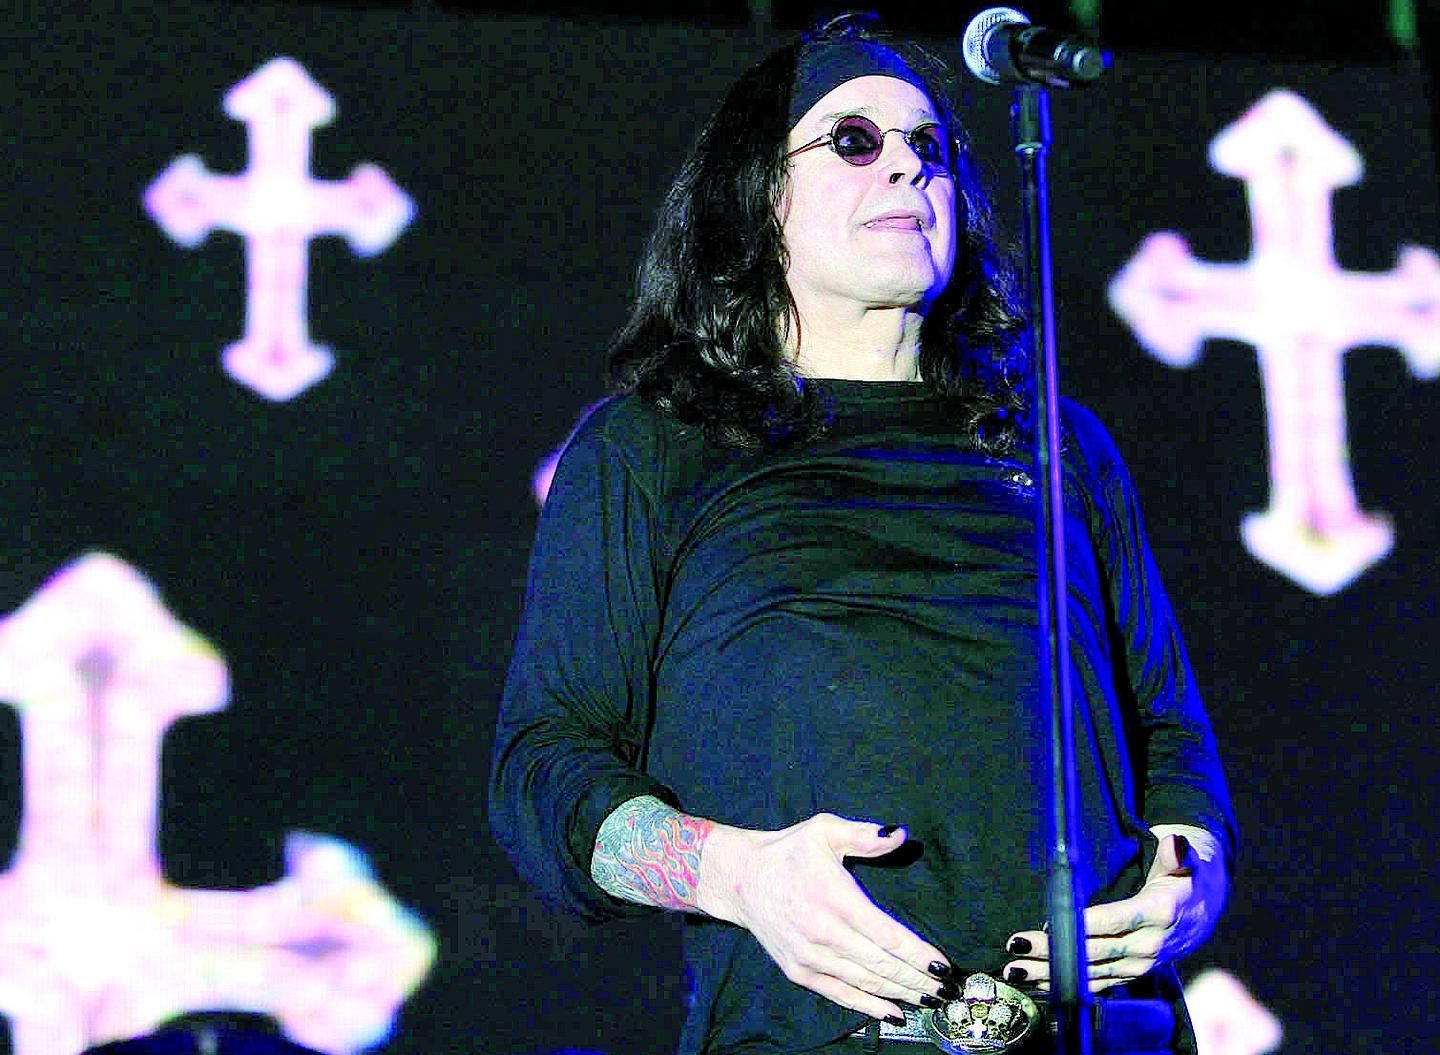 Por suspeita de traição, Ozzy Osbourne se separa de sua mulher